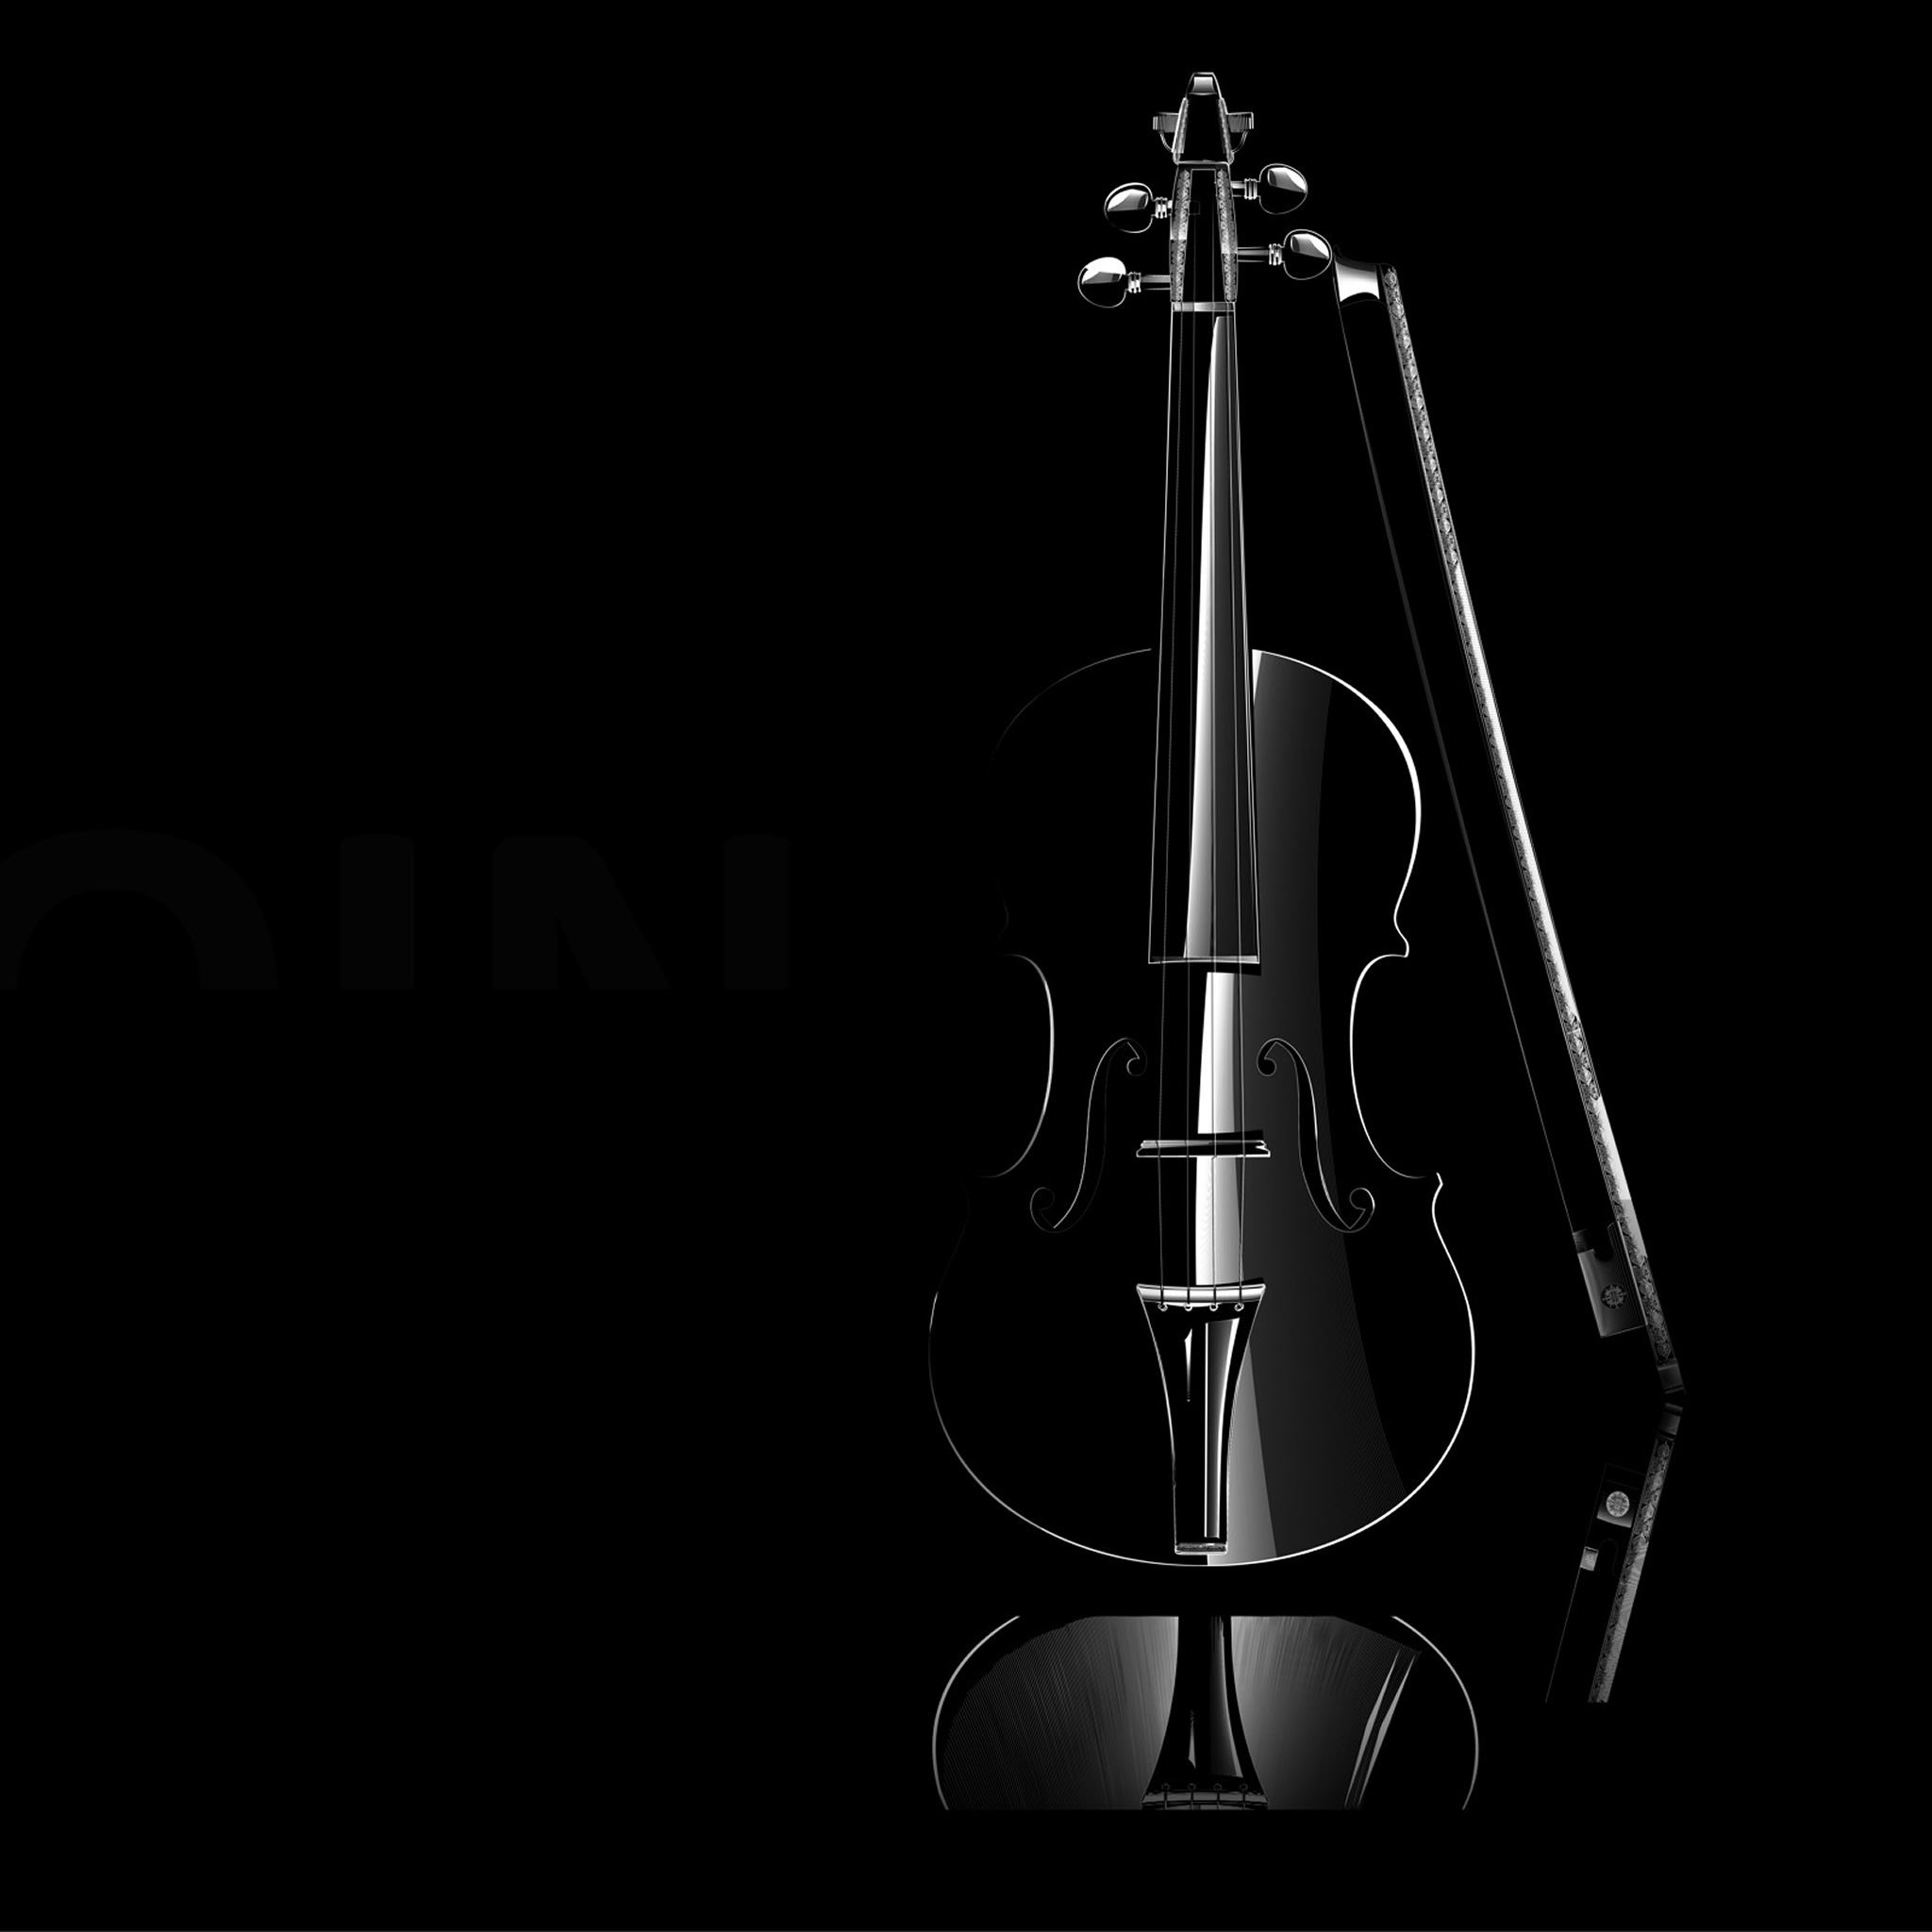 Mozart Violin iPad Air wallpaper 